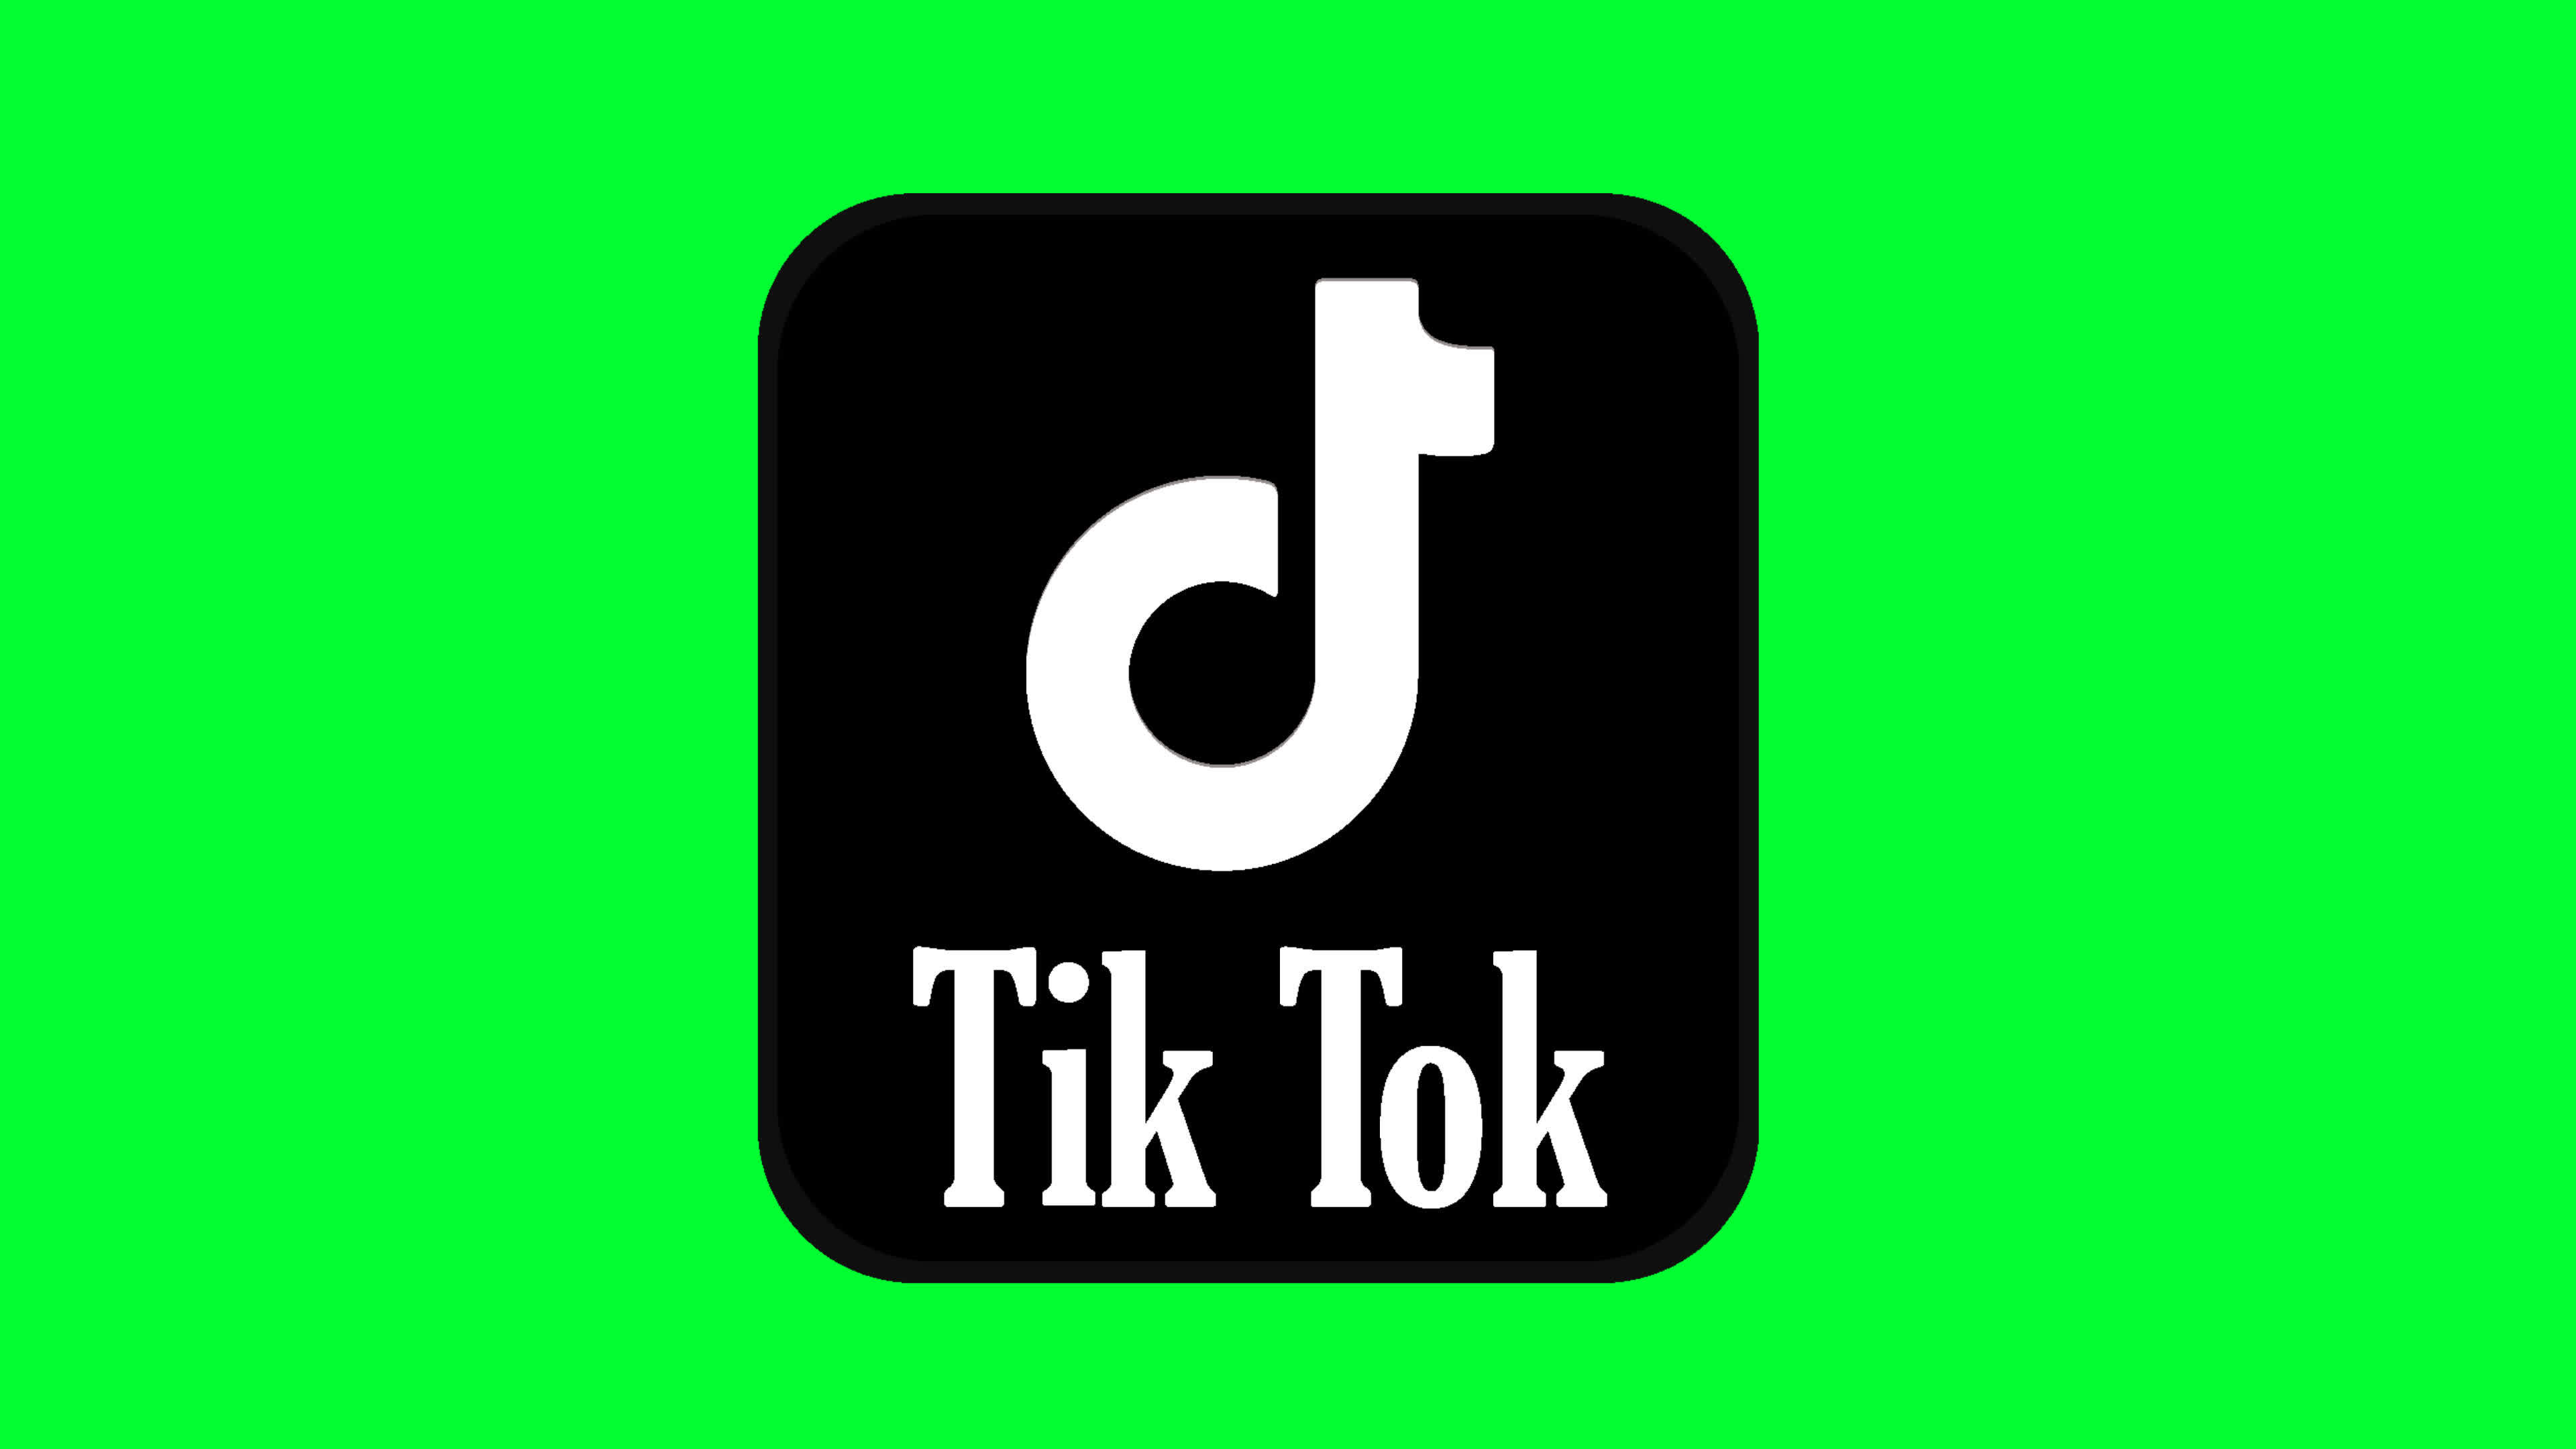 Để thể hiện sự chuyên nghiệp và thu hút người xem trên TikTok, logo animation là một yếu tố cực kỳ quan trọng. Hãy xem hình ảnh liên quan để thấy những ý tưởng sáng tạo và độc đáo trong việc tạo ra logo animation cho TikTok.